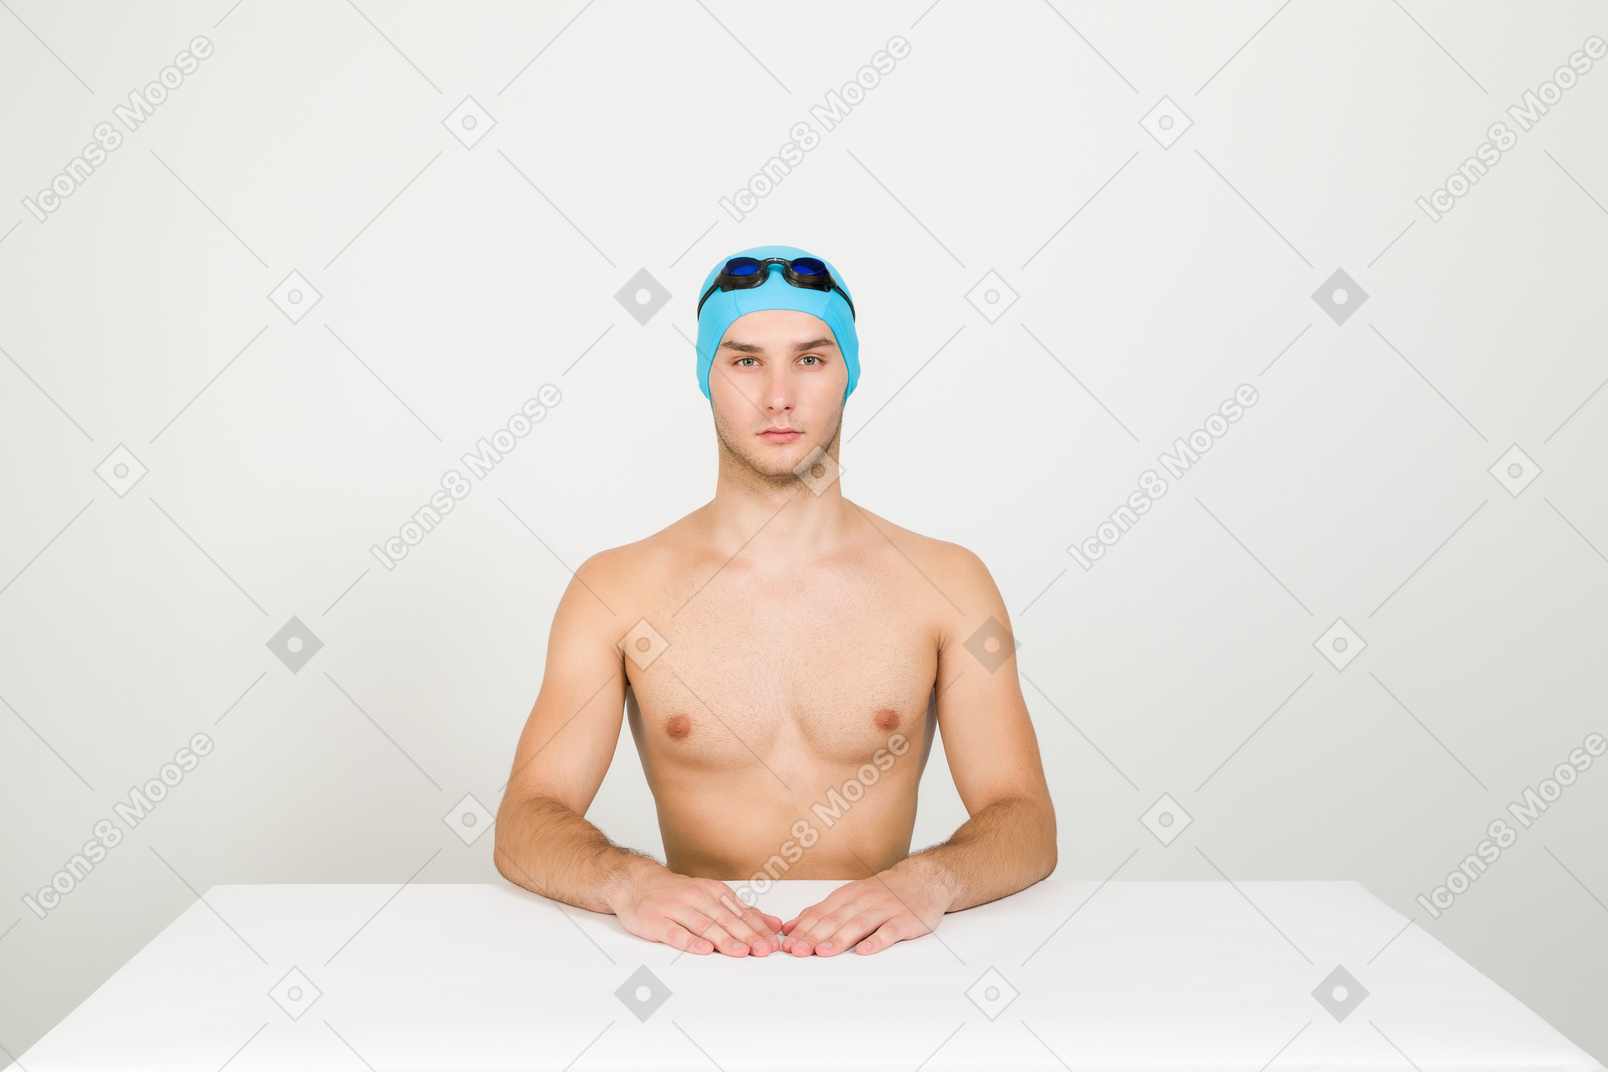 Nuotatore a torso nudo seduto al tavolo con le sue mani su di esso